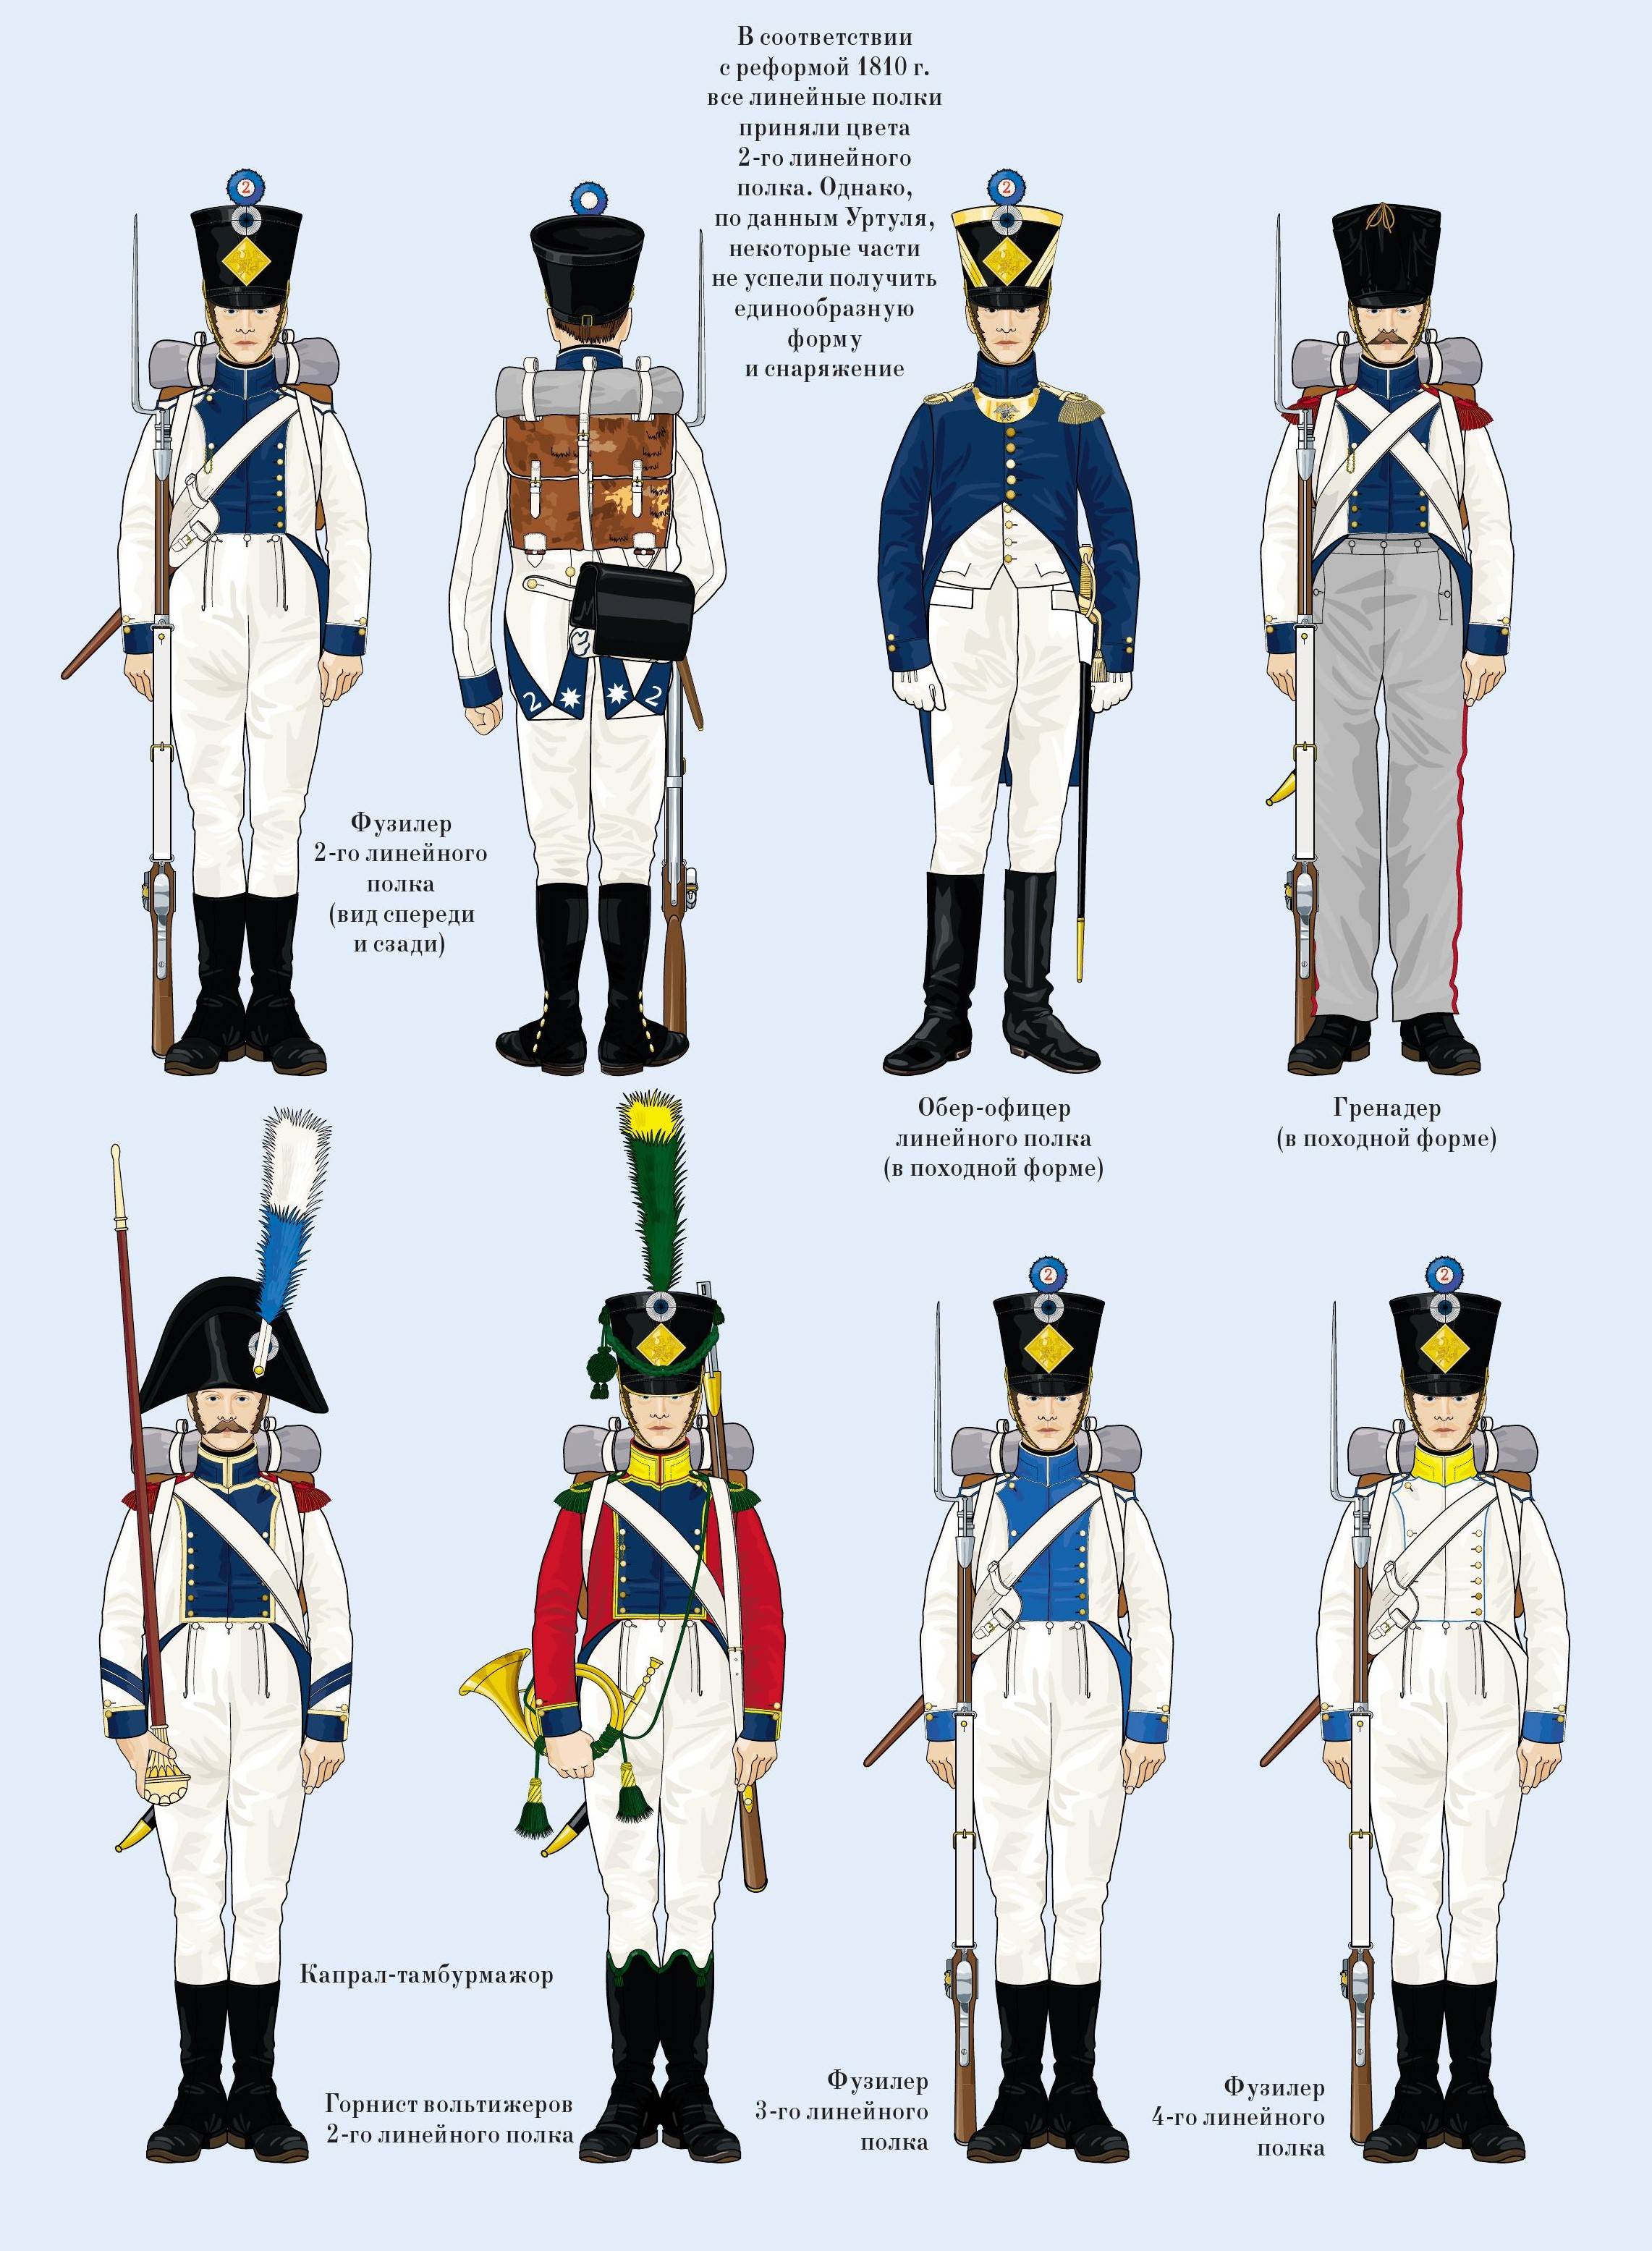 84 Линейный полк Наполеона